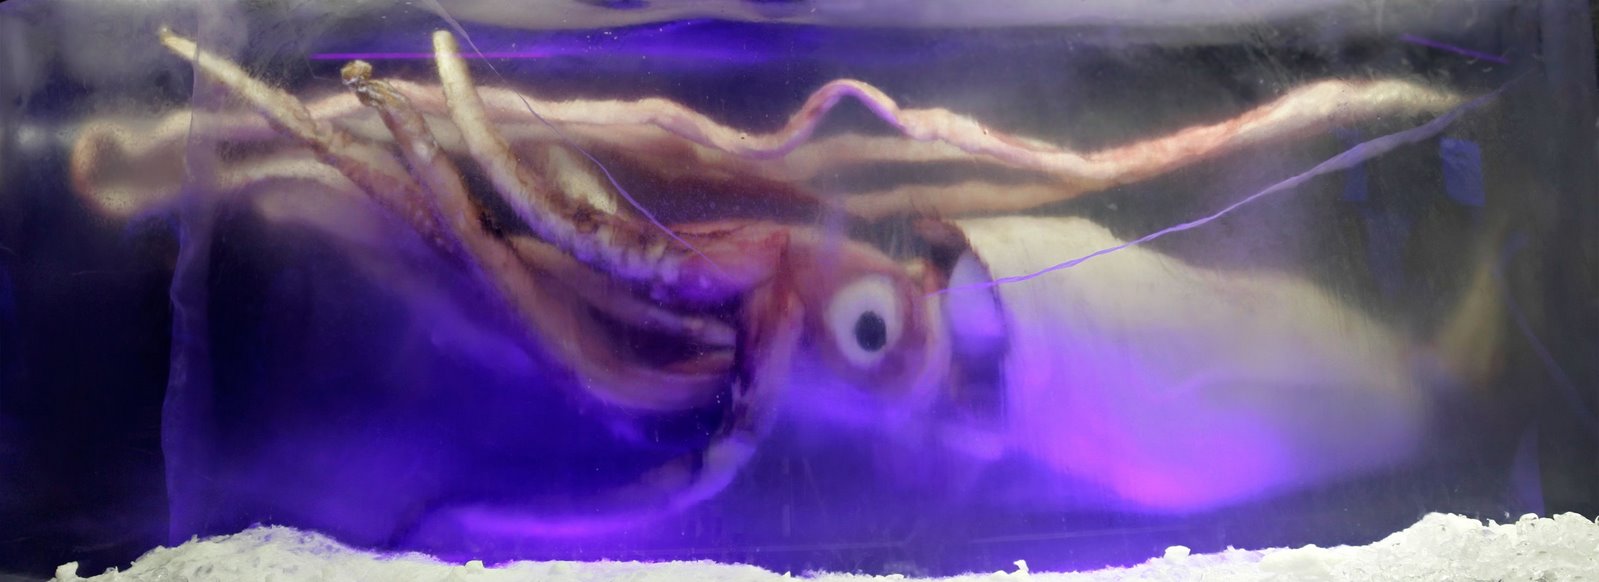 [Giant_squid_melb_aquarium03.jpg]